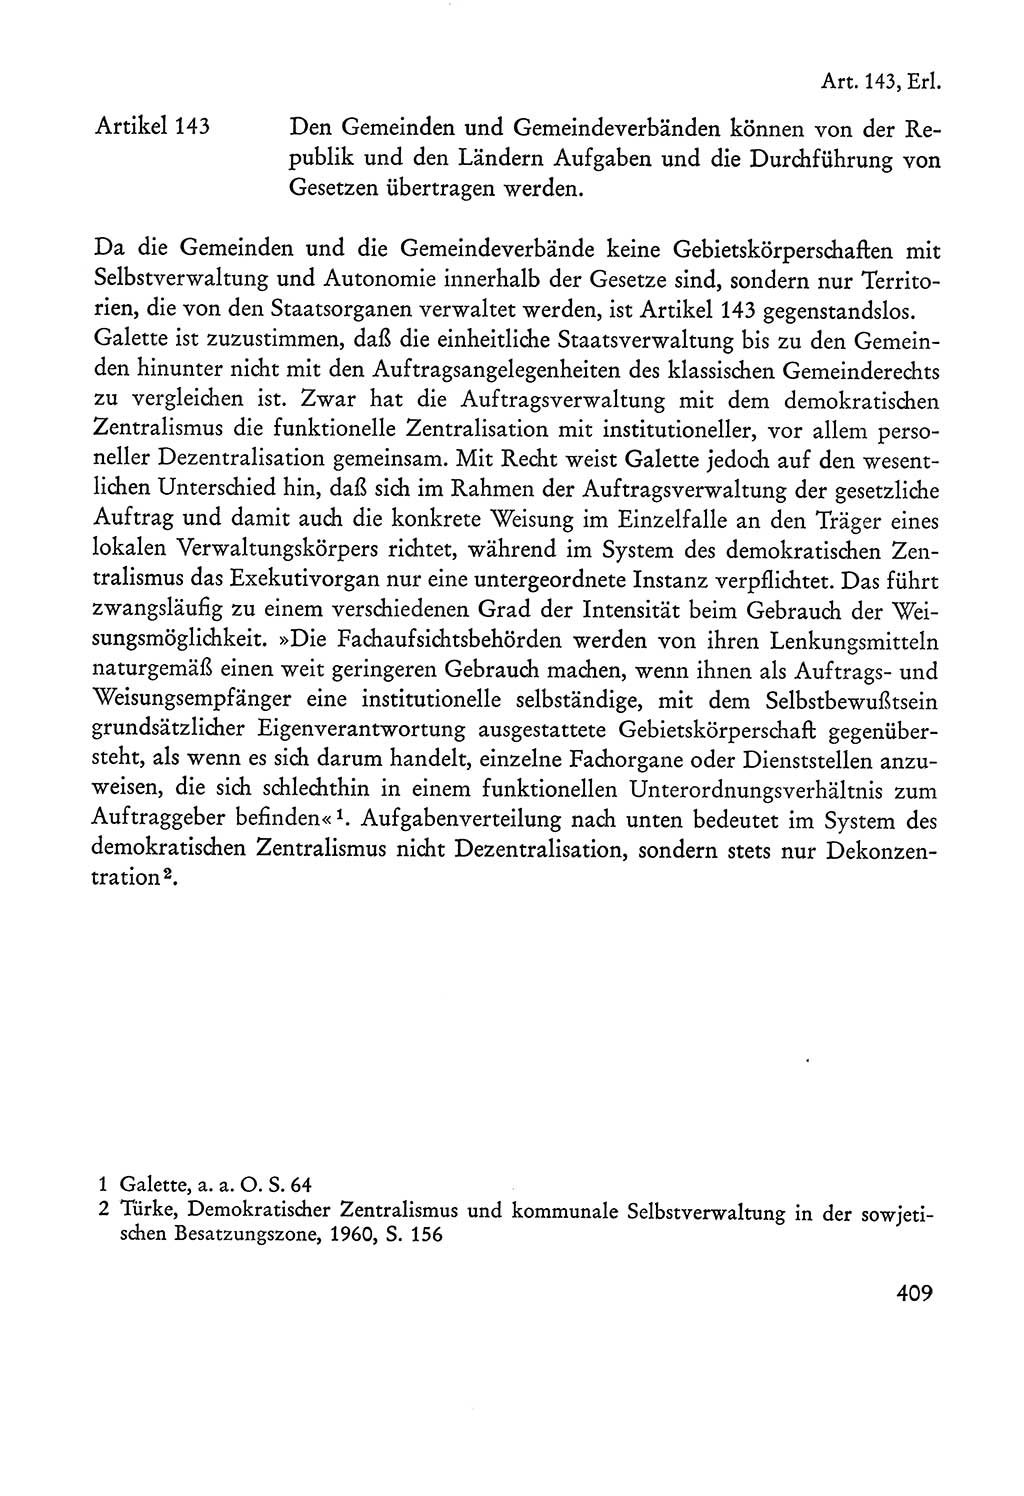 Verfassung der Sowjetischen Besatzungszone (SBZ) Deutschlands [Deutsche Demokratische Republik (DDR)], Text und Kommentar [Bundesrepublik Deutschland (BRD)] 1962, Seite 409 (Verf. SBZ Dtl. DDR Komm. BRD 1962, S. 409)